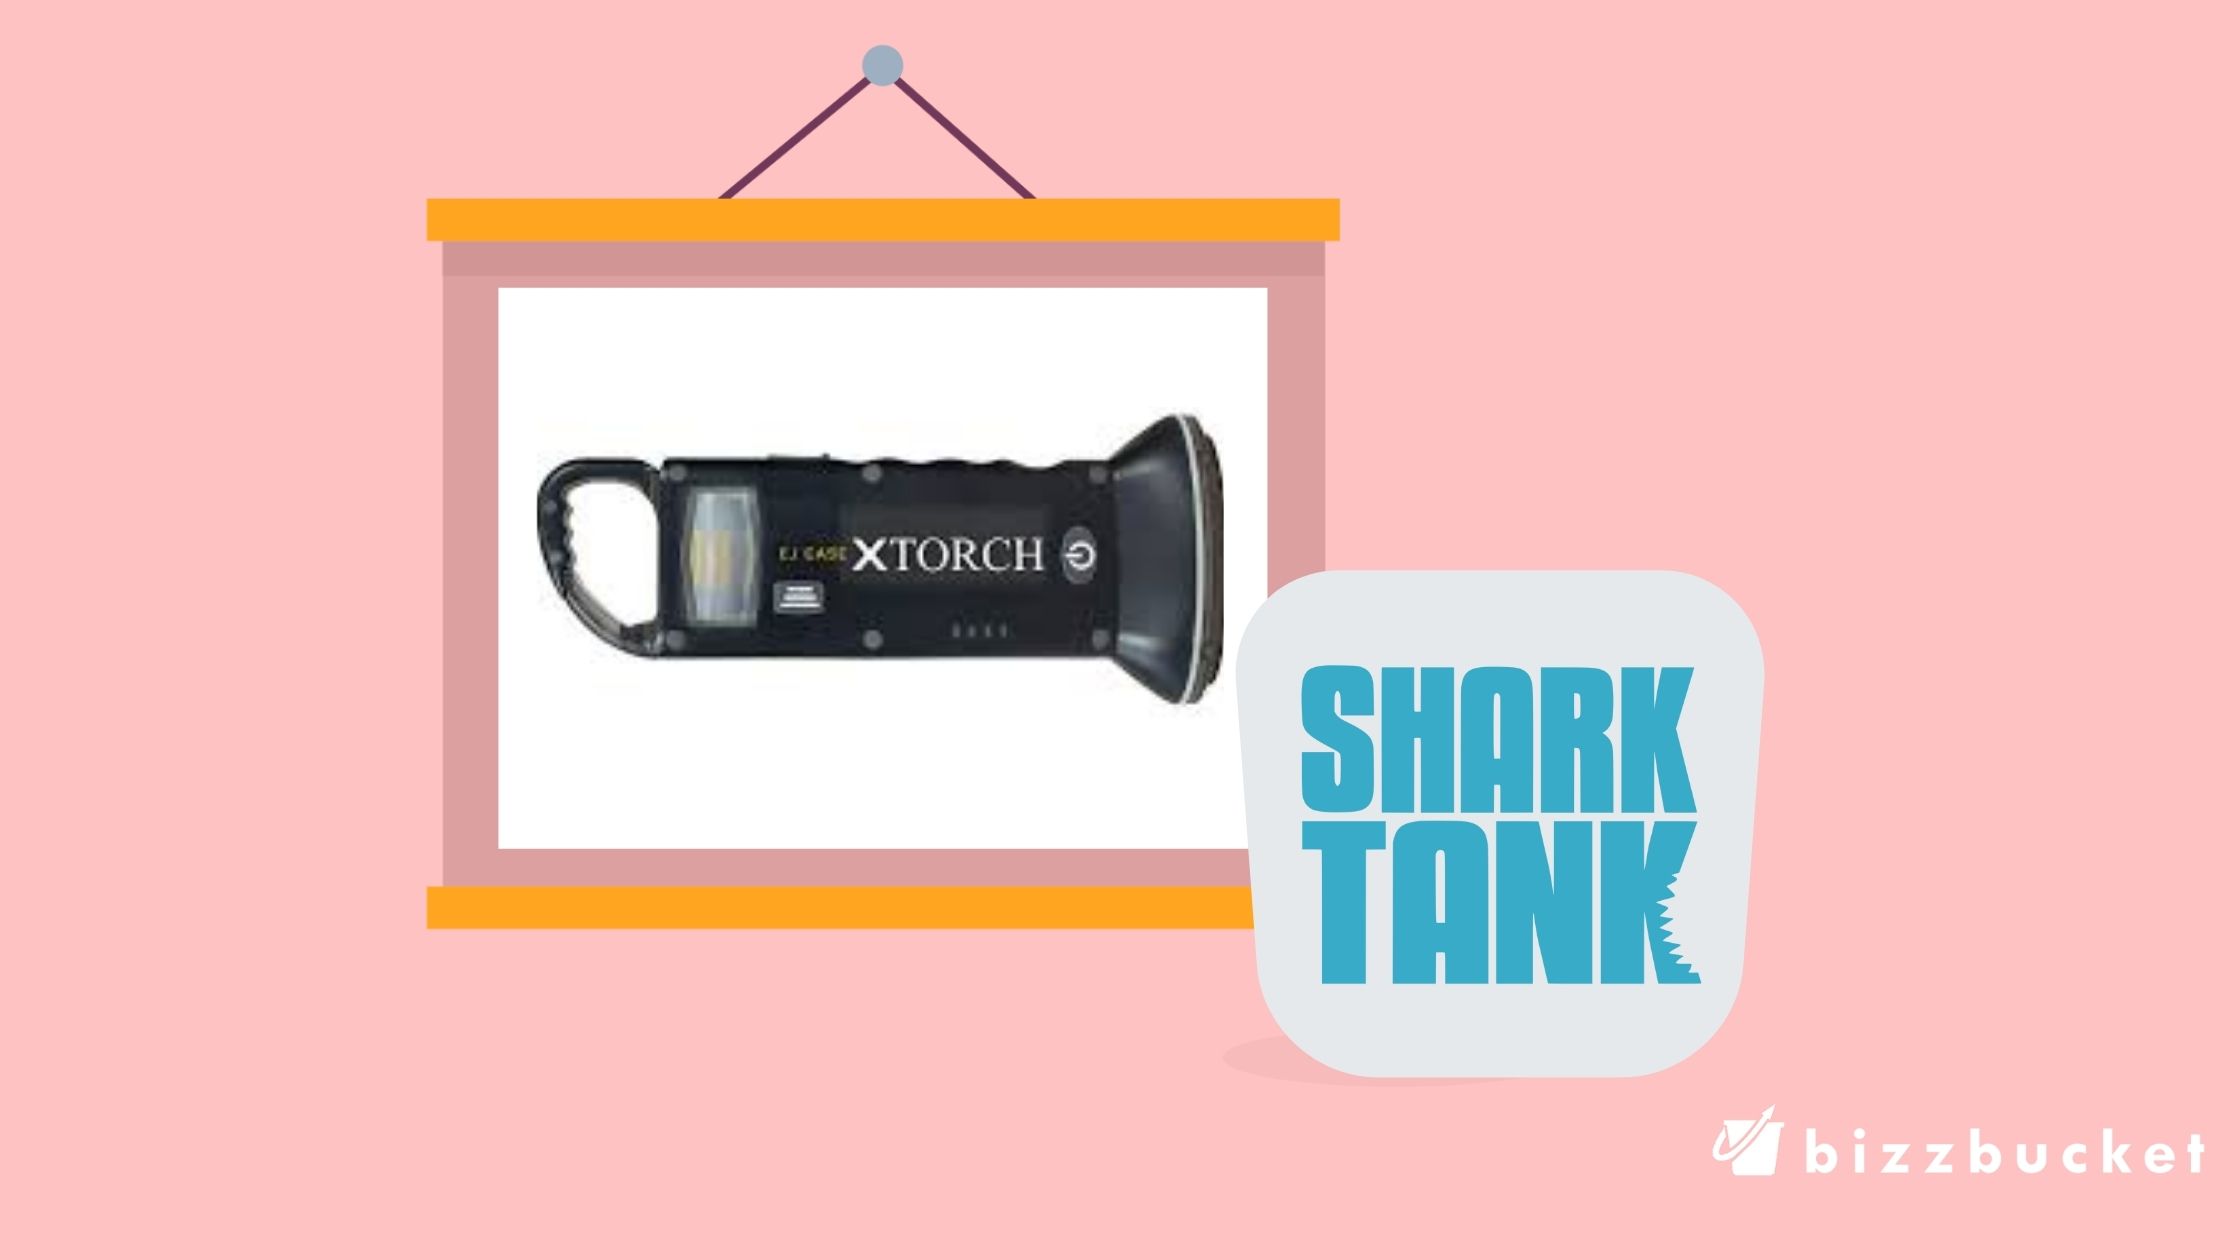 XTORCH shark tank update